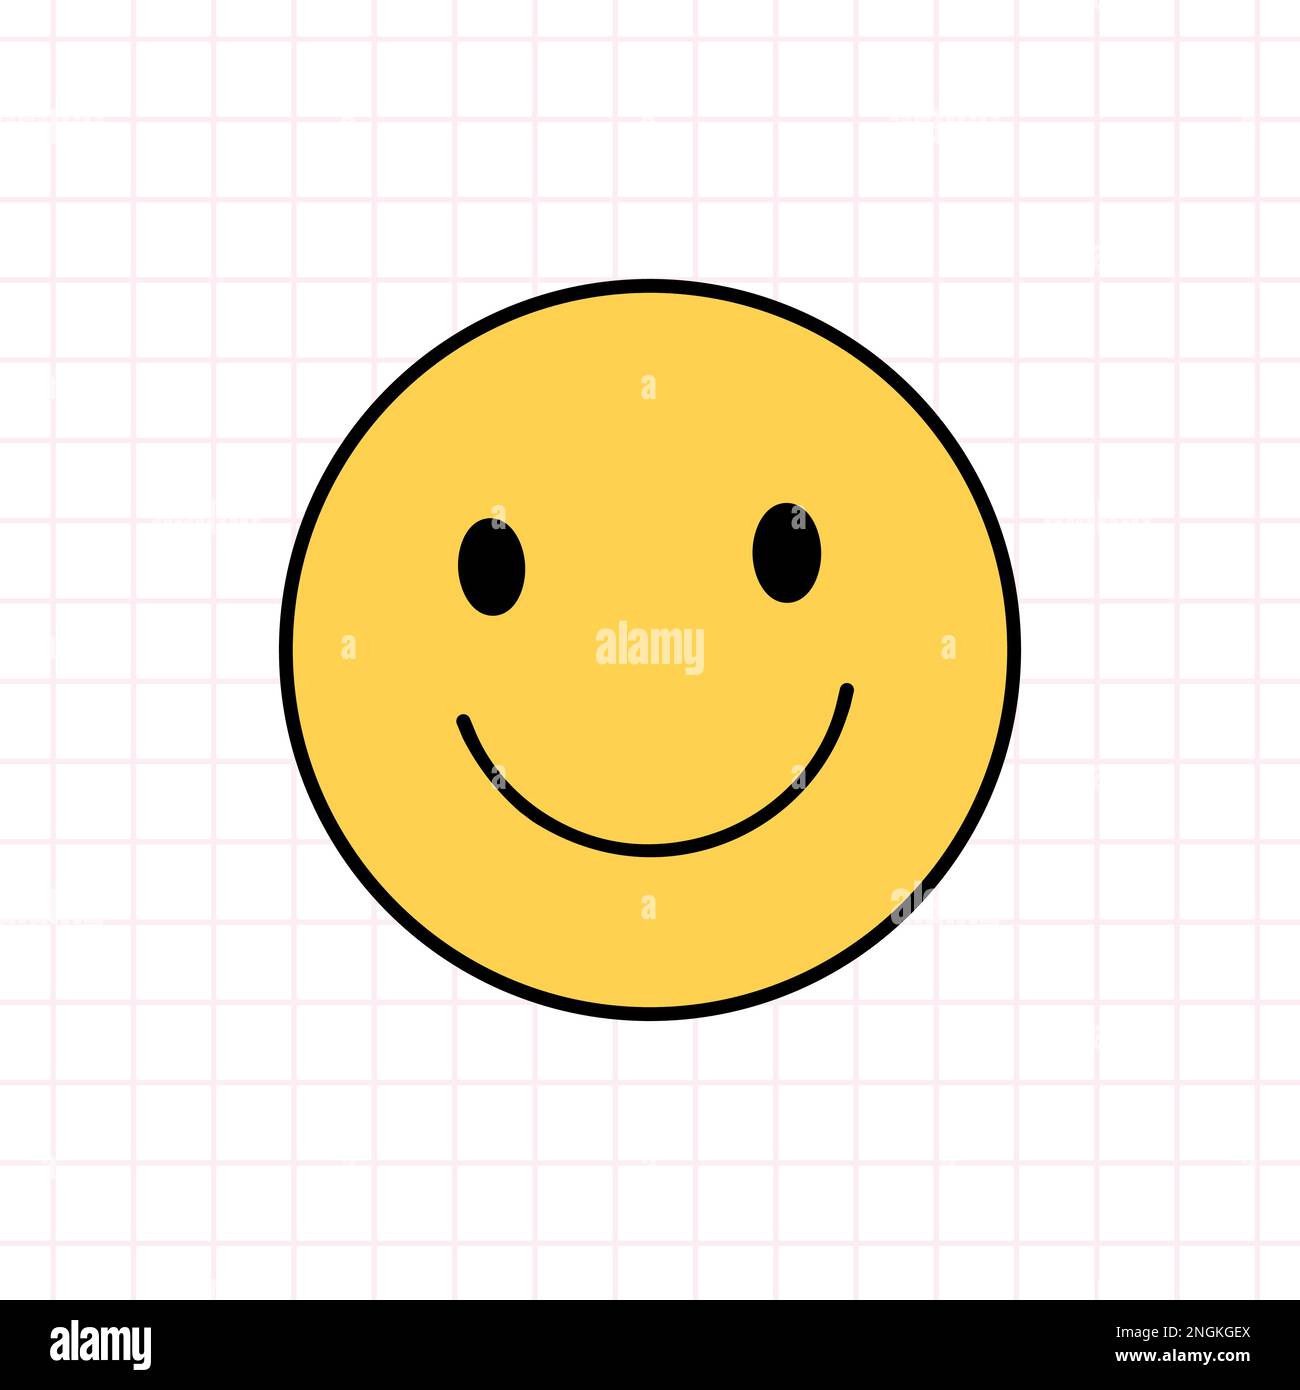 Icona sorridere nello stile degli anni '90s. Disegno vettoriale a mano di un doodle isolato su sfondo bianco. Nostalgia per il 1990s. Perfetto per carte, decorazioni, logo, adesivi. Illustrazione Vettoriale